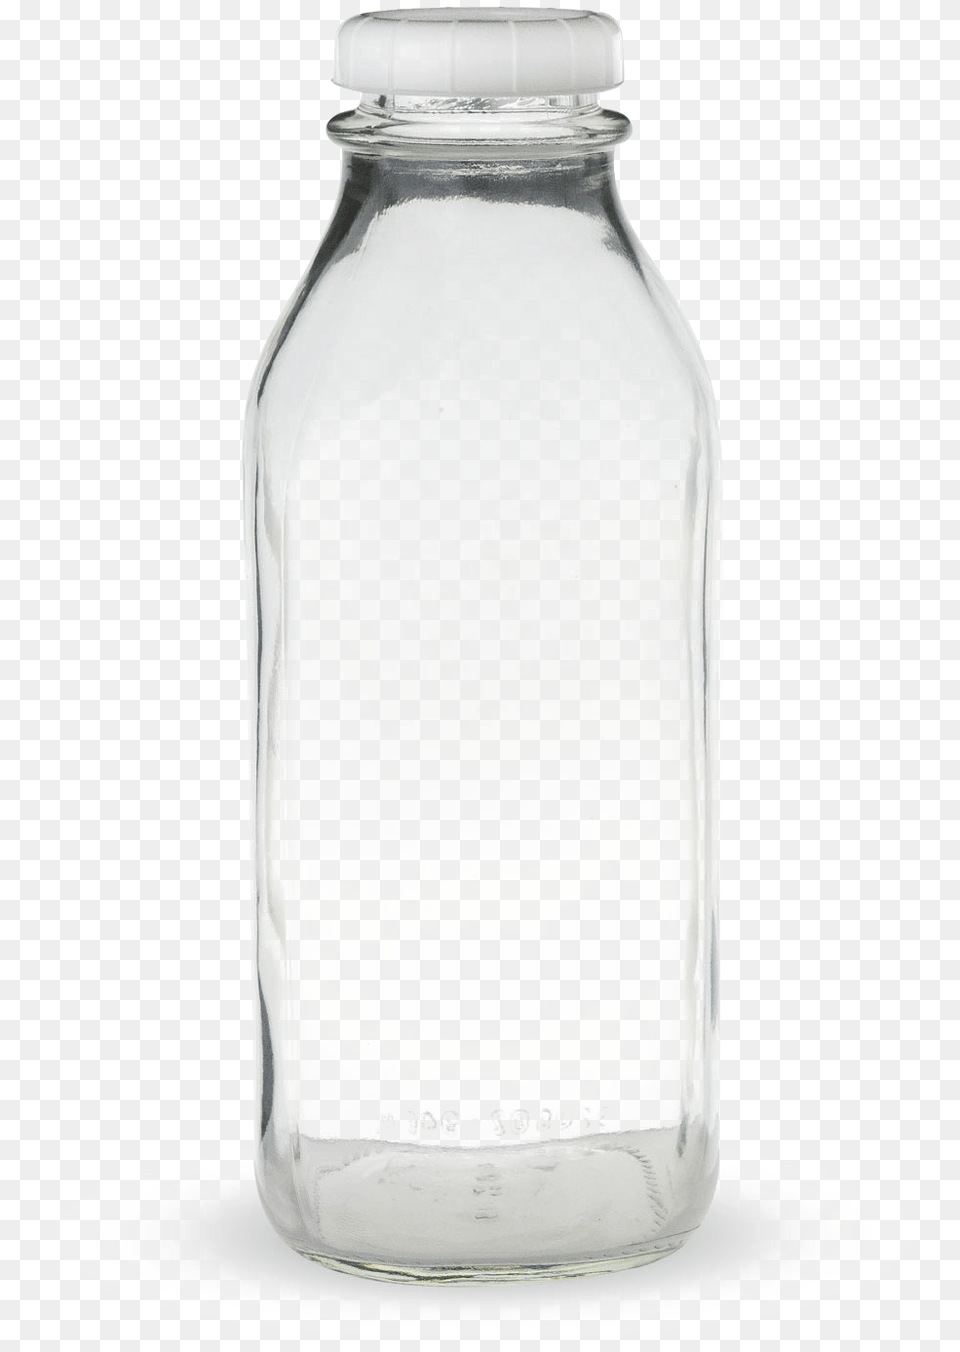 Bottle Background Bottle Black Background, Jar, Glass, Beverage, Milk Free Transparent Png